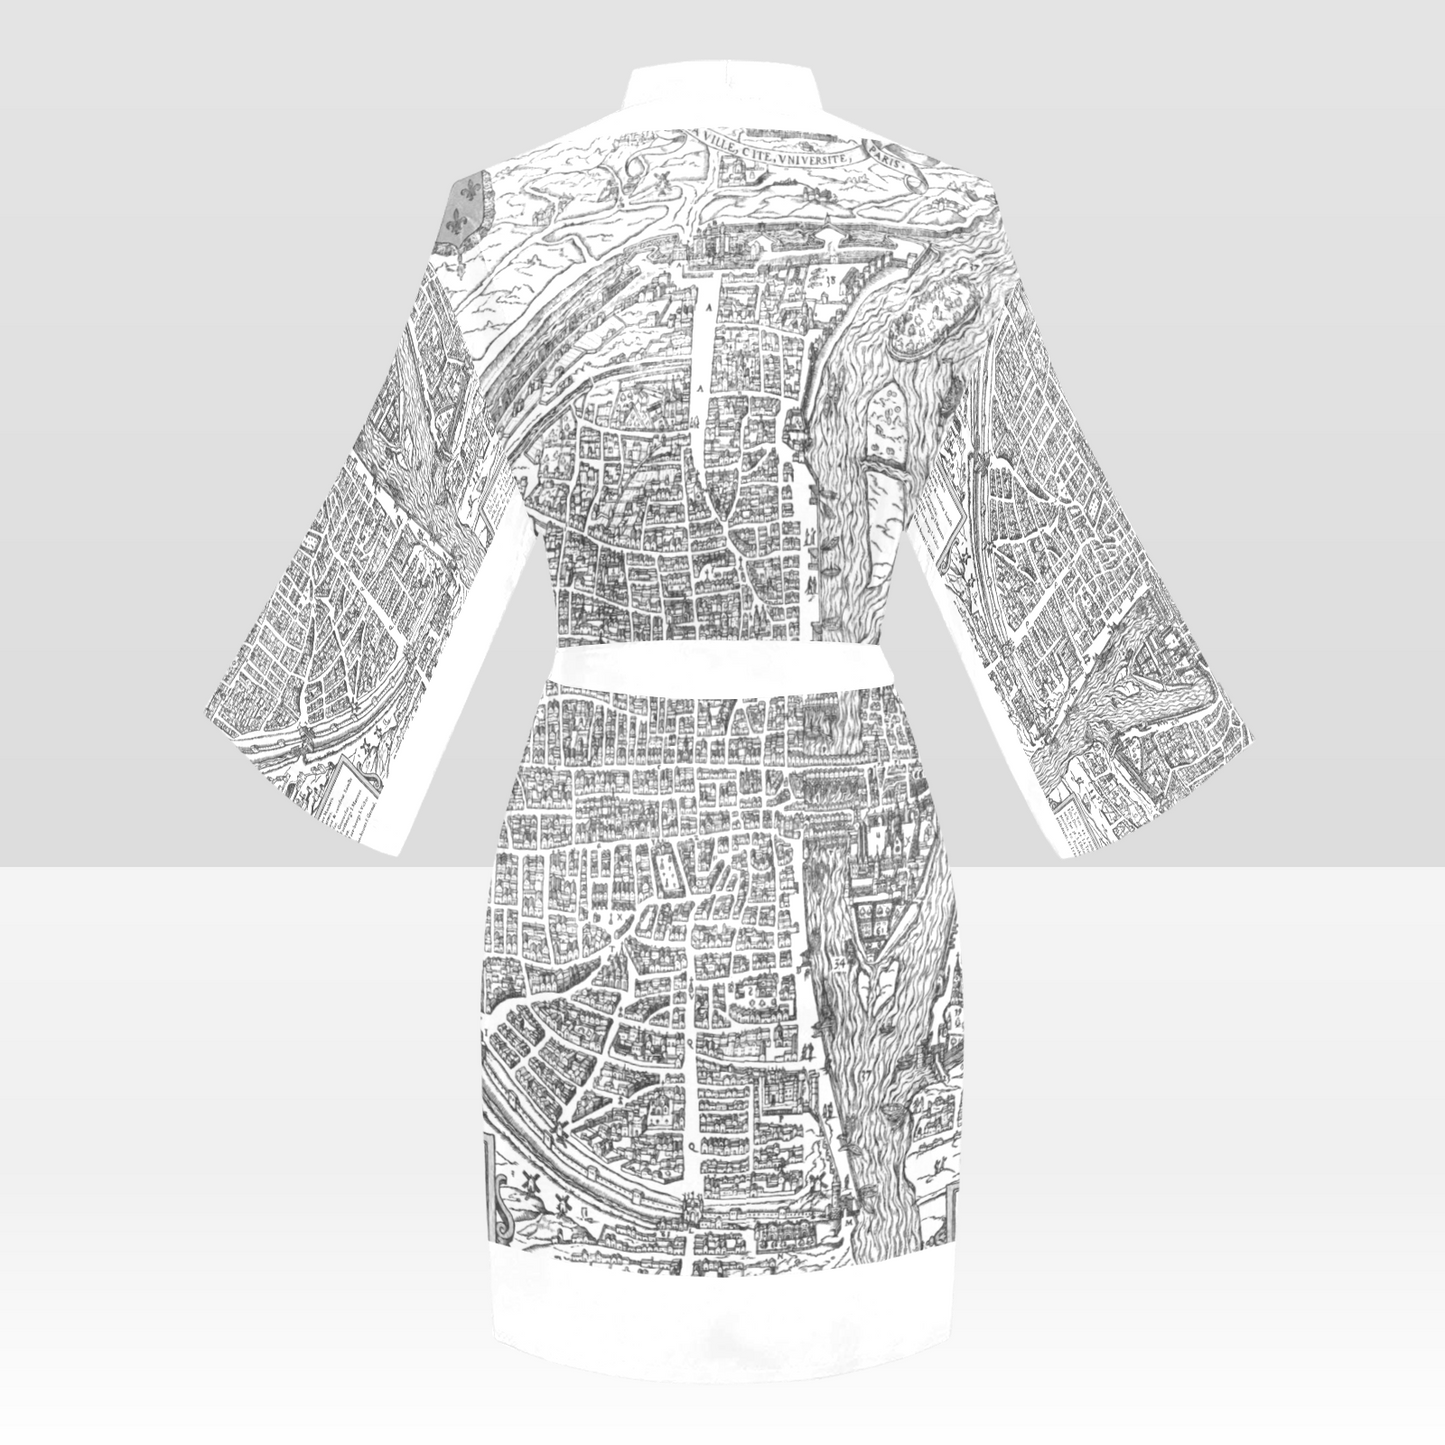 Antique Map Kimono Robe, Black or White Trim, Sizes XS to 2XL, Design 47